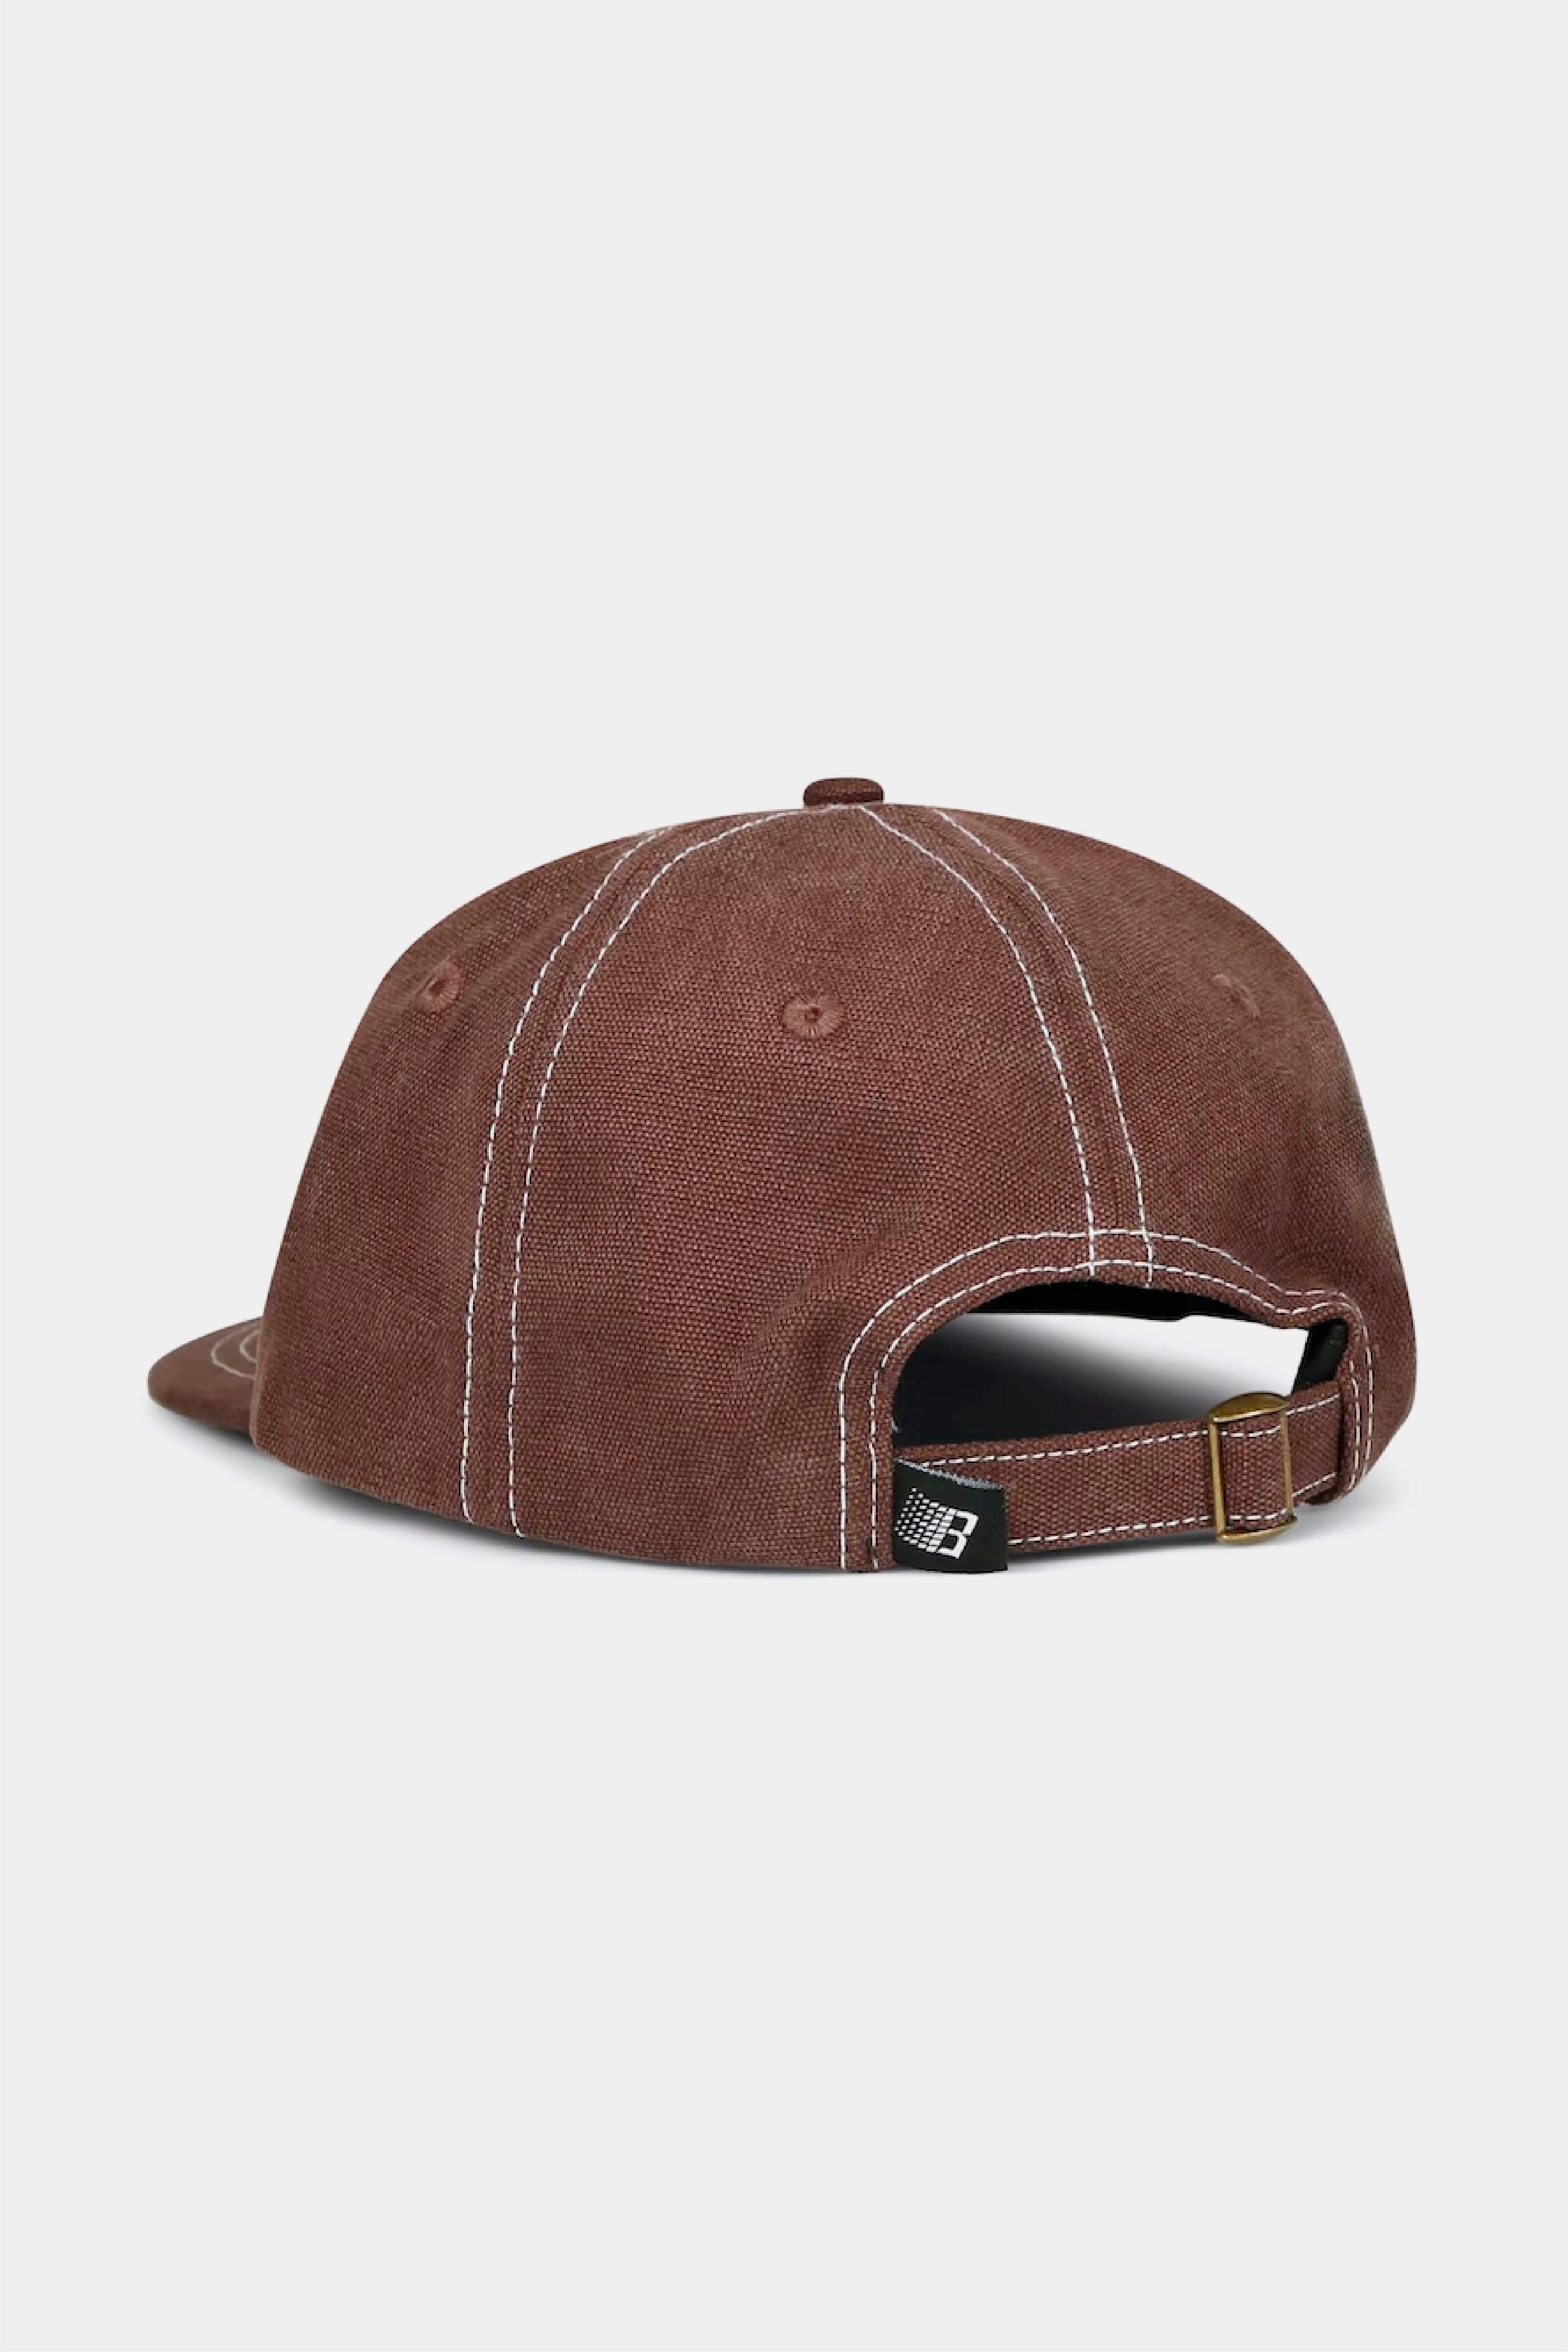 Selectshop FRAME - BRONZE 56K Pitcrew Hat All-Accessories Concept Store Dubai